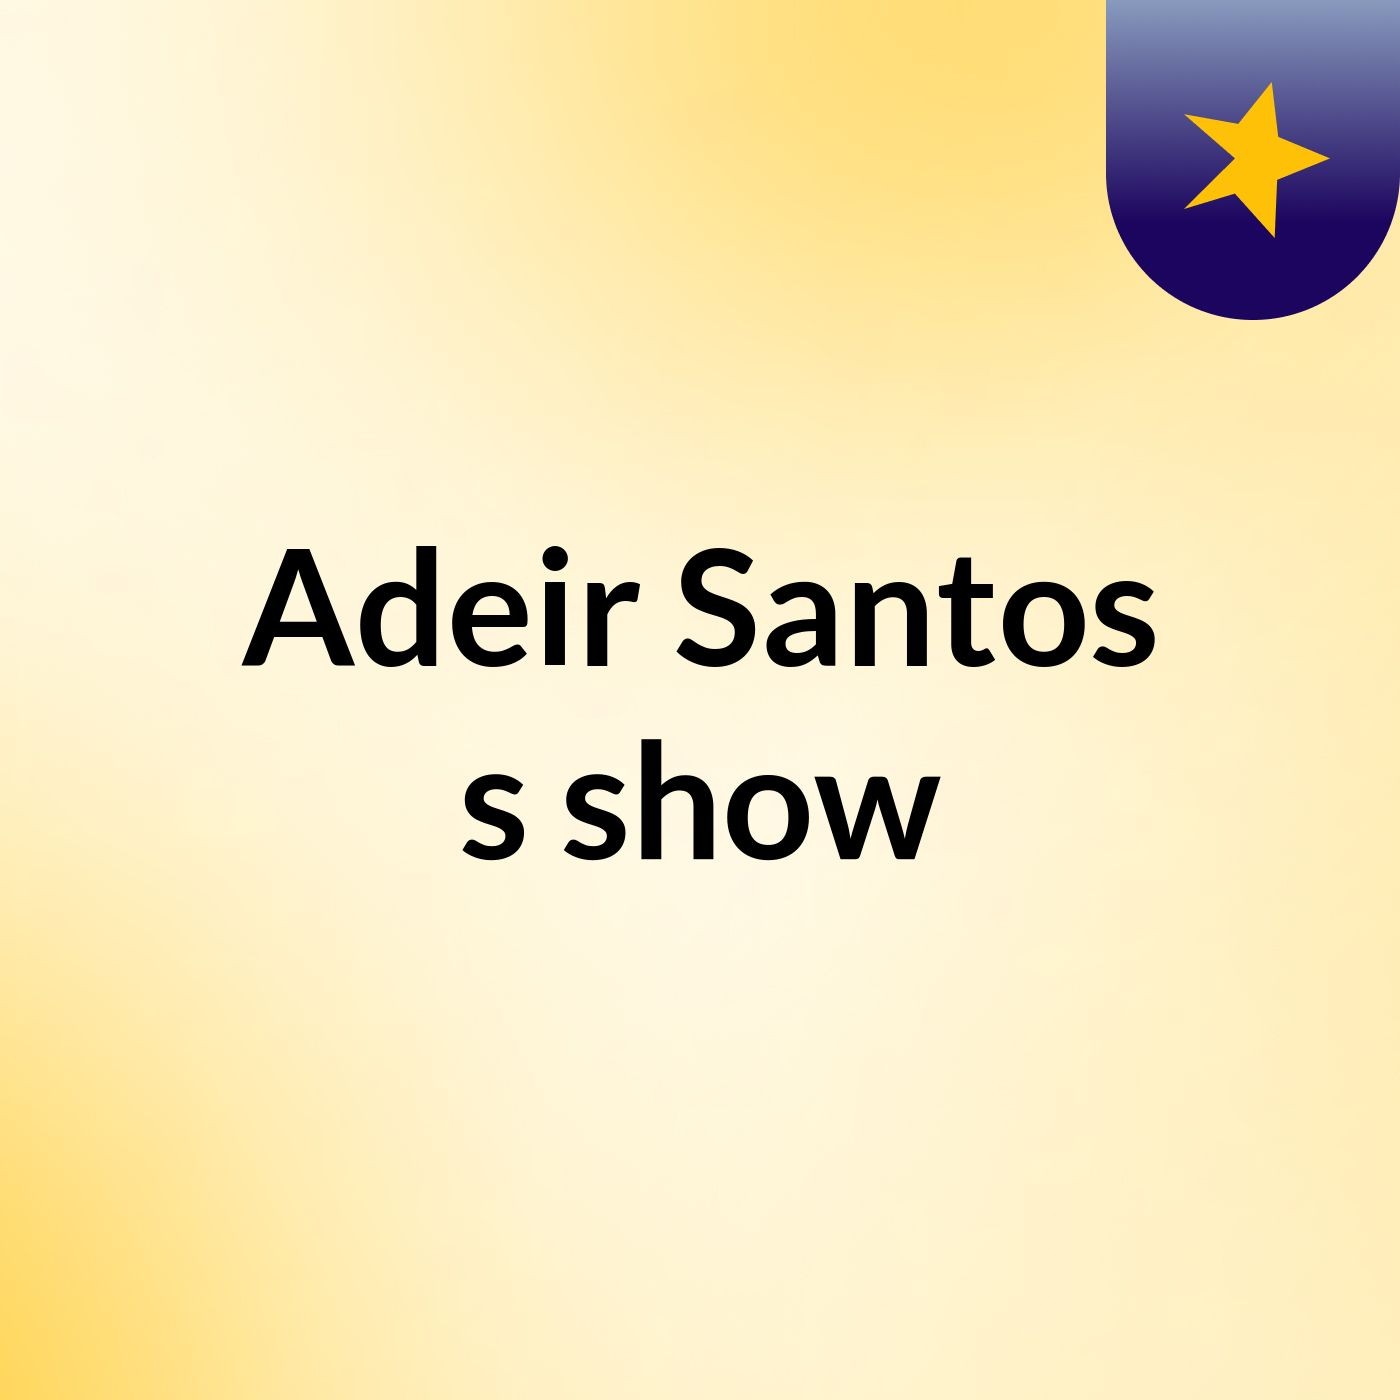 Adeir Santos's show